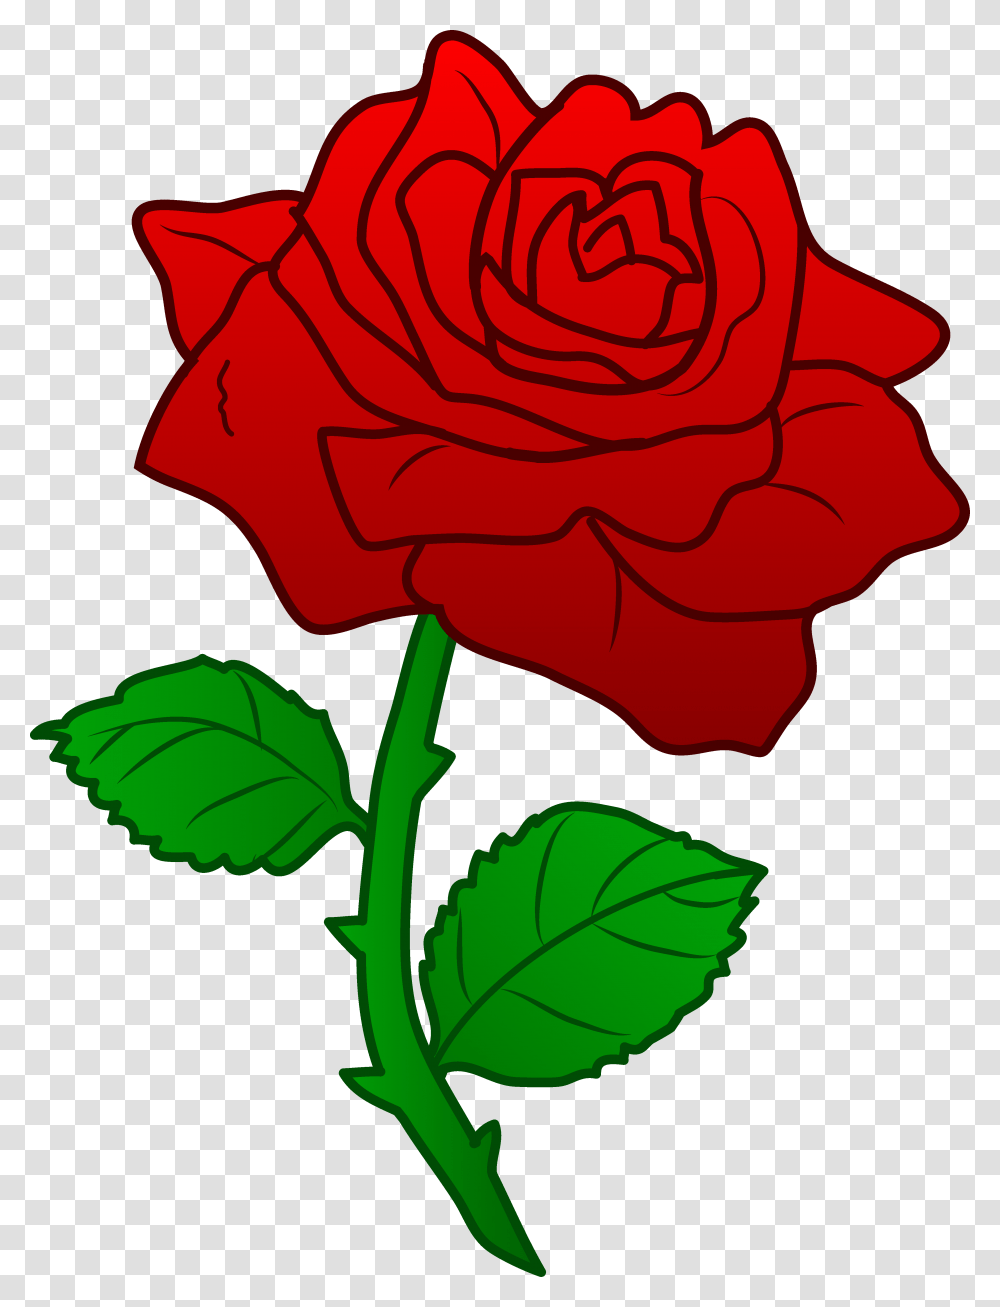 Knockout Clipart Spring Flowers Labour Party, Rose, Plant, Blossom, Petal Transparent Png